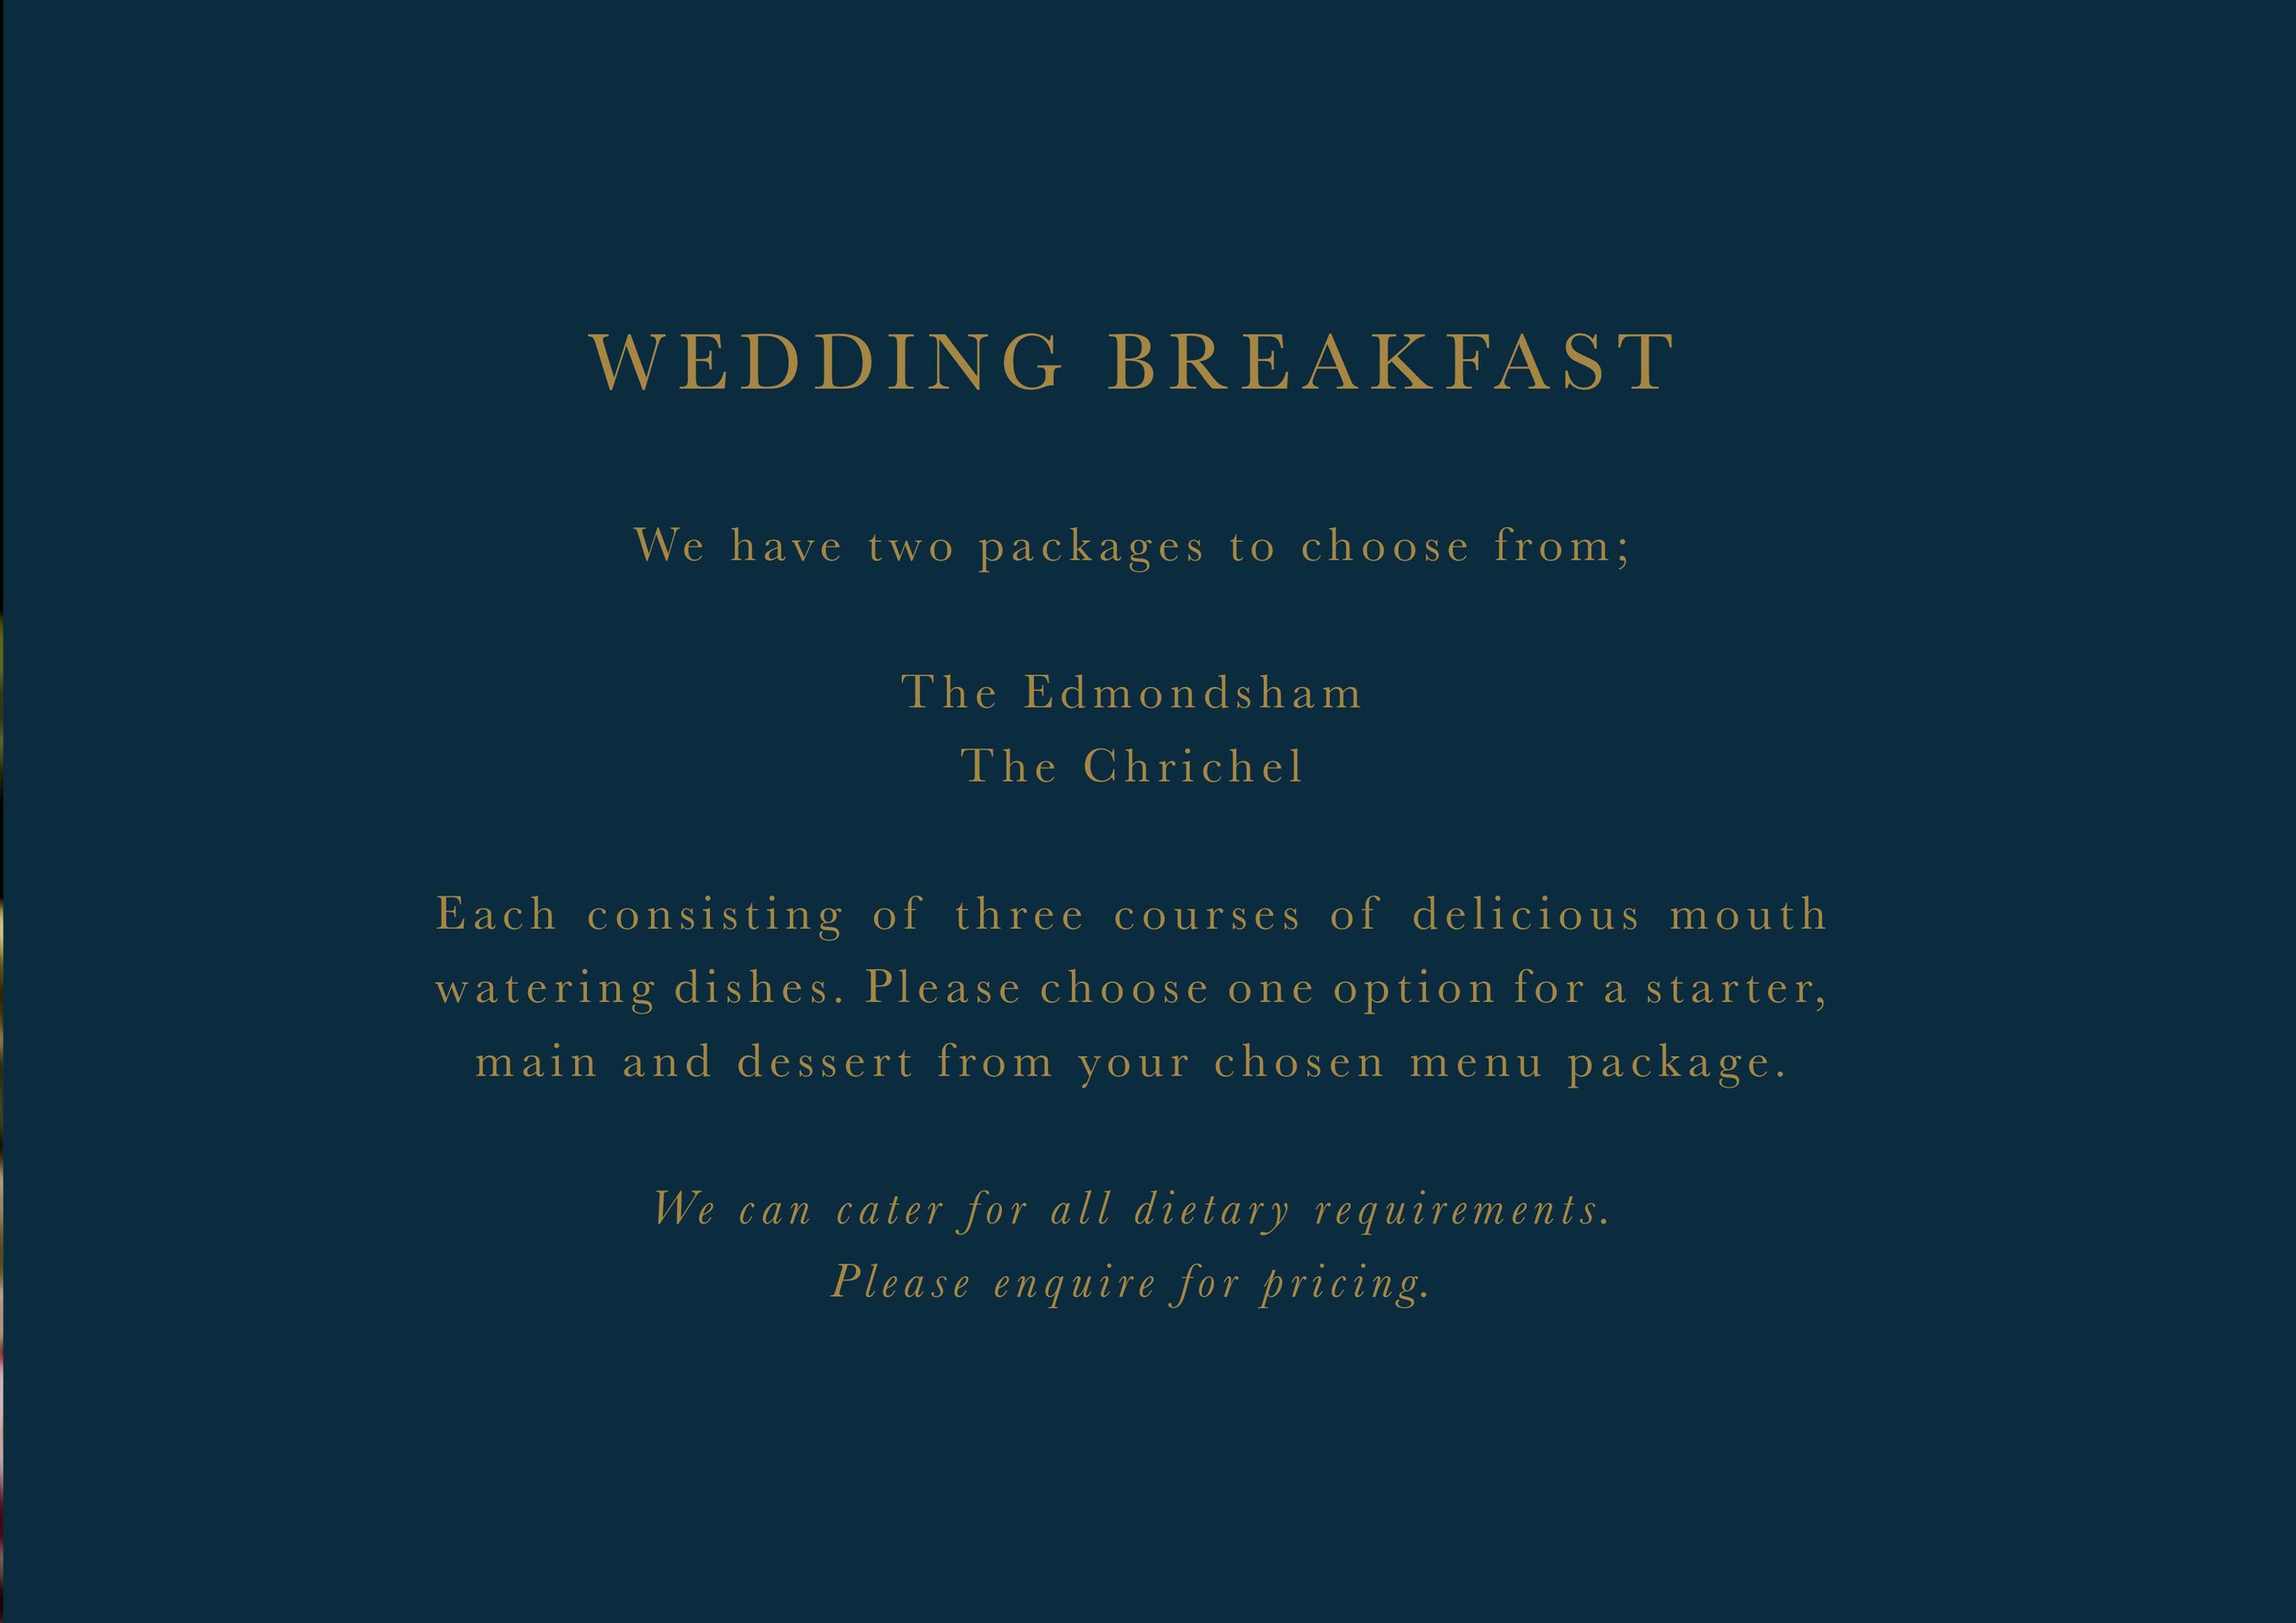 Wedding Brochure pricing page 2.jpg